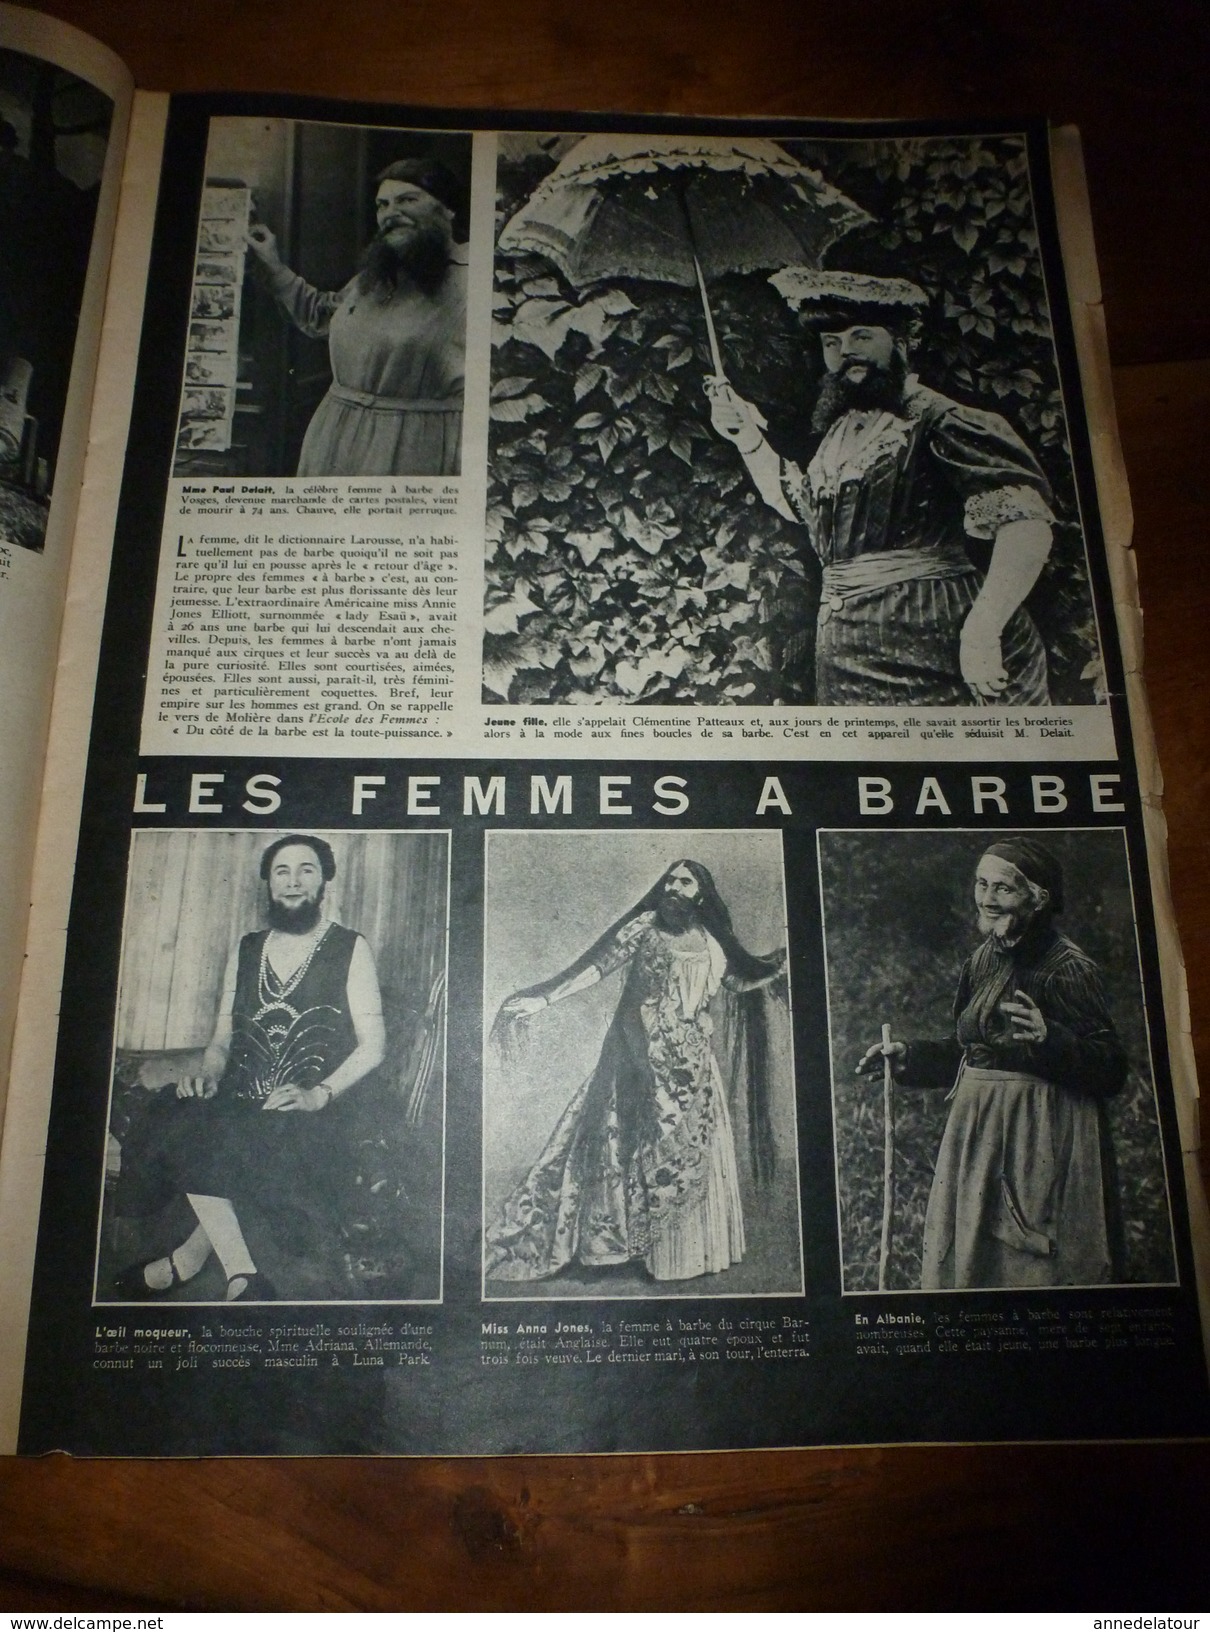 1939 MATCH: Femmes a barbe;SALON, Saint-Cyr de l'Air:Femmes-pilotes-d'avion;MANOSQUE et l'histoire des enfants RICARD